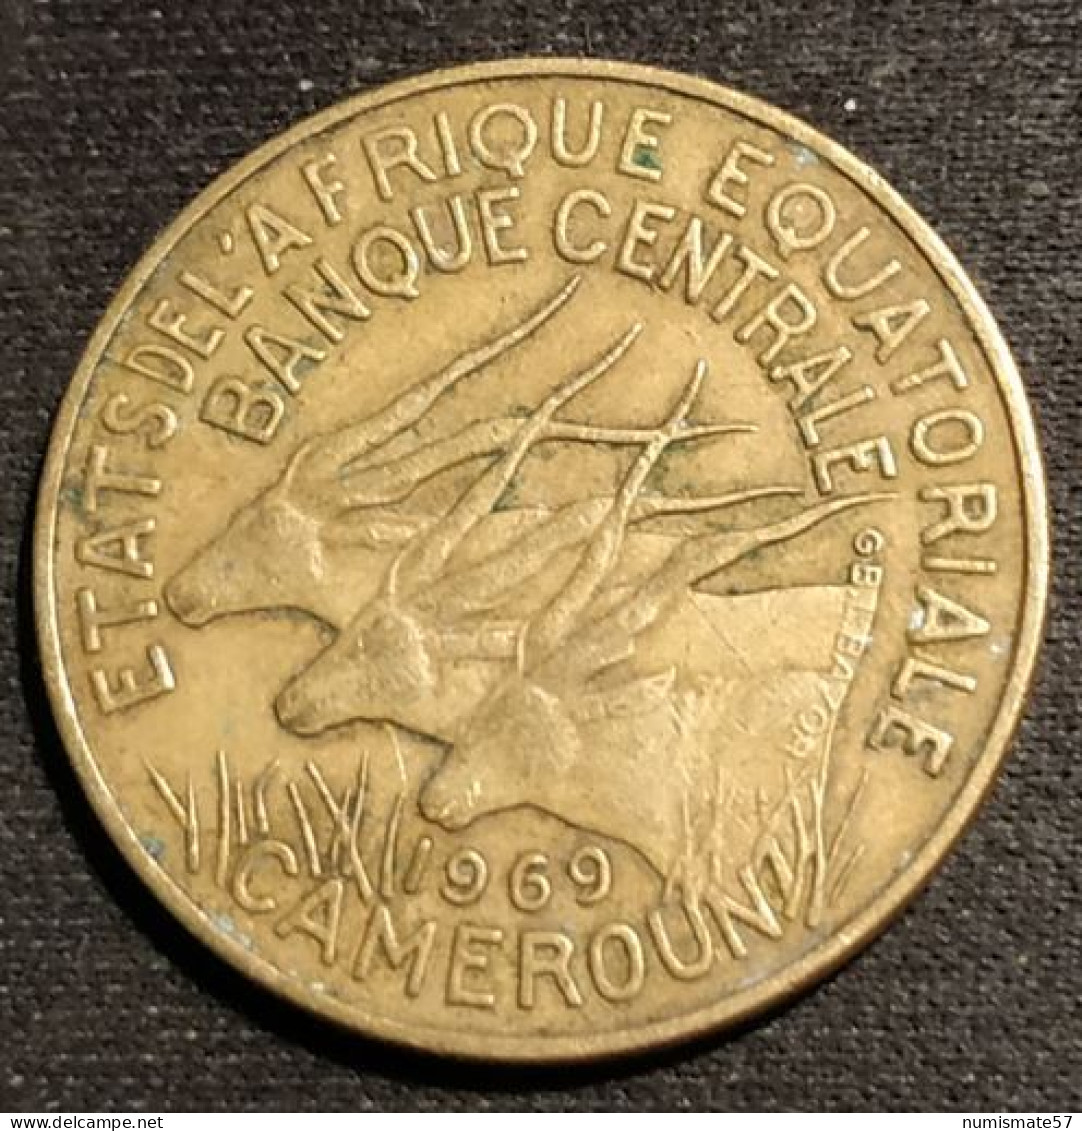 CAMEROUN - ETATS DE L'AFRIQUE EQUATORIALE - 10 FRANCS 1969 - KM 2a - Cameroon